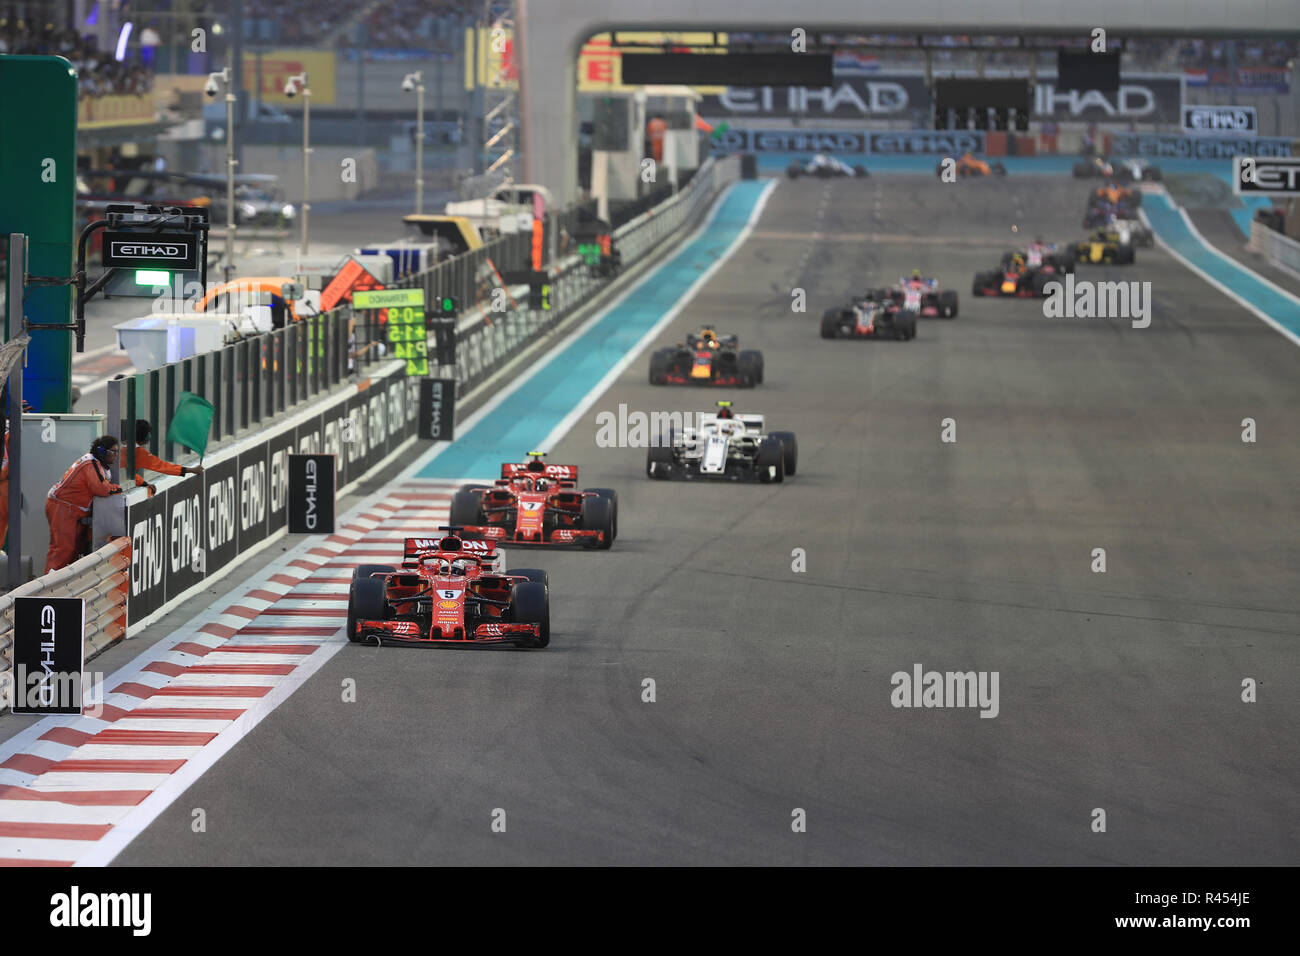 25. November 2018, Yas Marina, Abu Dhabi, Vereinigte Arabische Emirate, Etihad Airways Formel 1 Grand Prix von Abu Dhabi, Race Day; Scuderia Ferrari, Sebastian Vettel Stockfoto